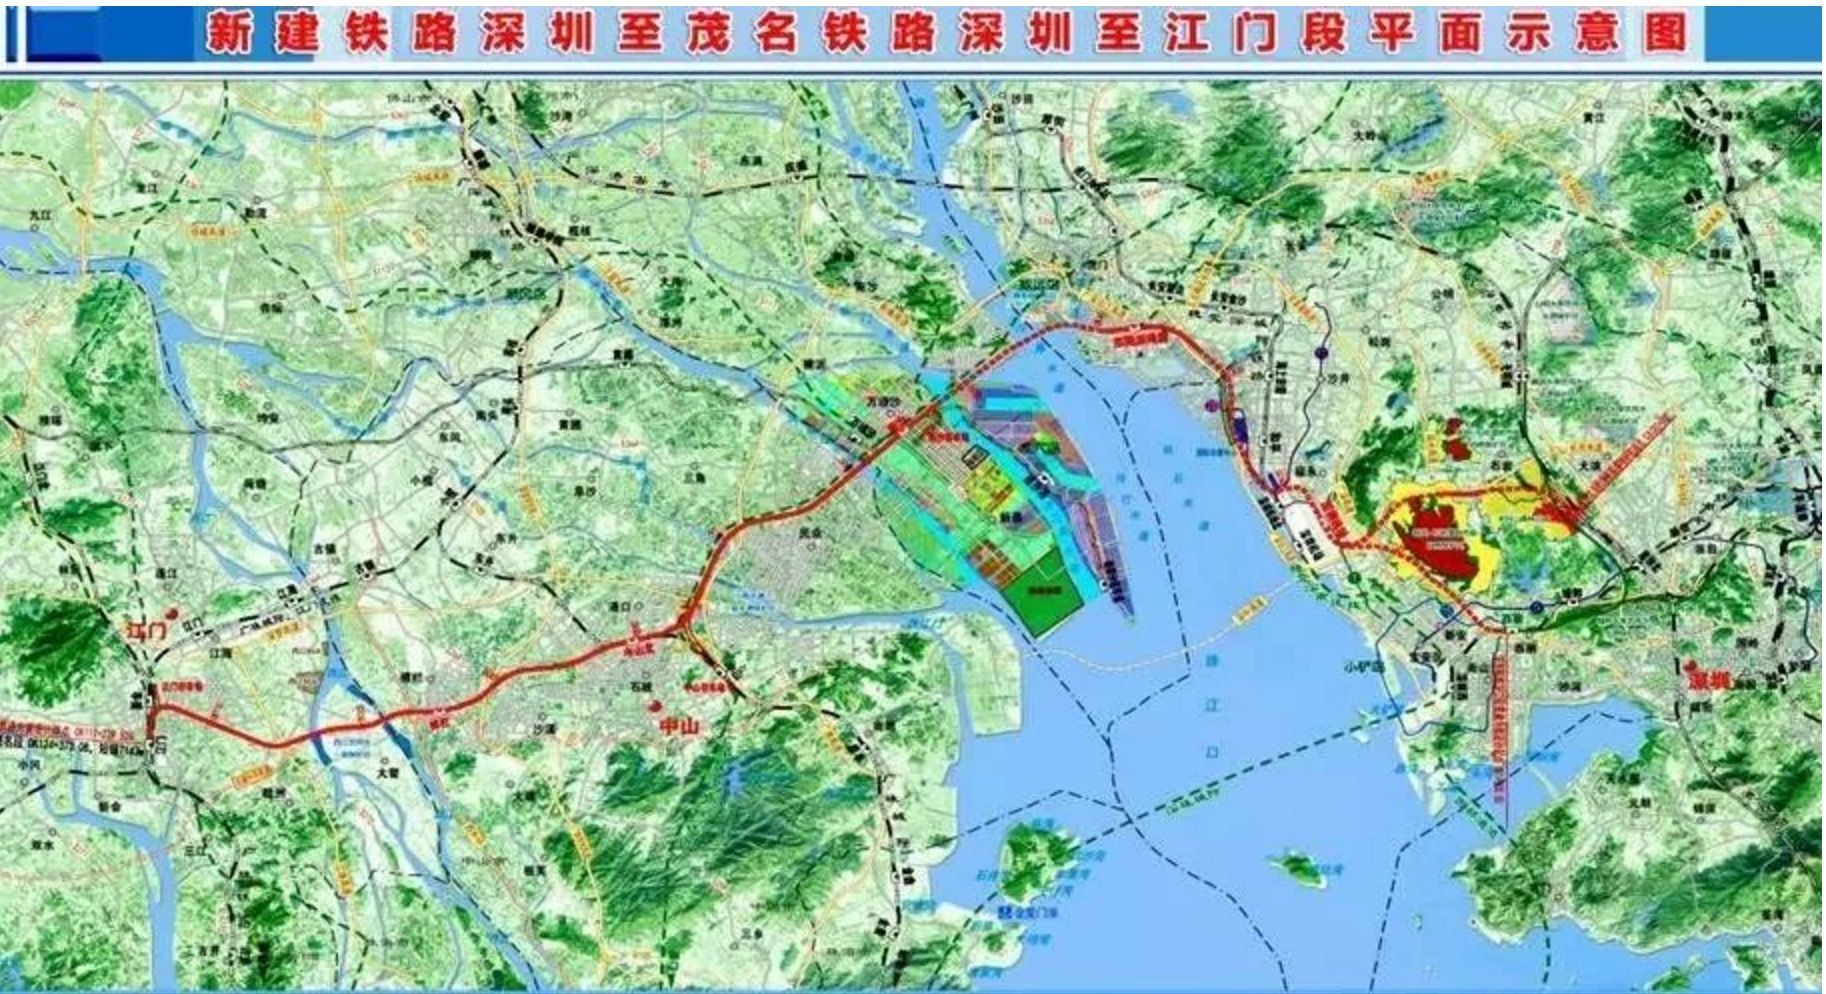 新建深圳至江门铁路是全国八纵八横高铁主通道沿海通道的重要组成